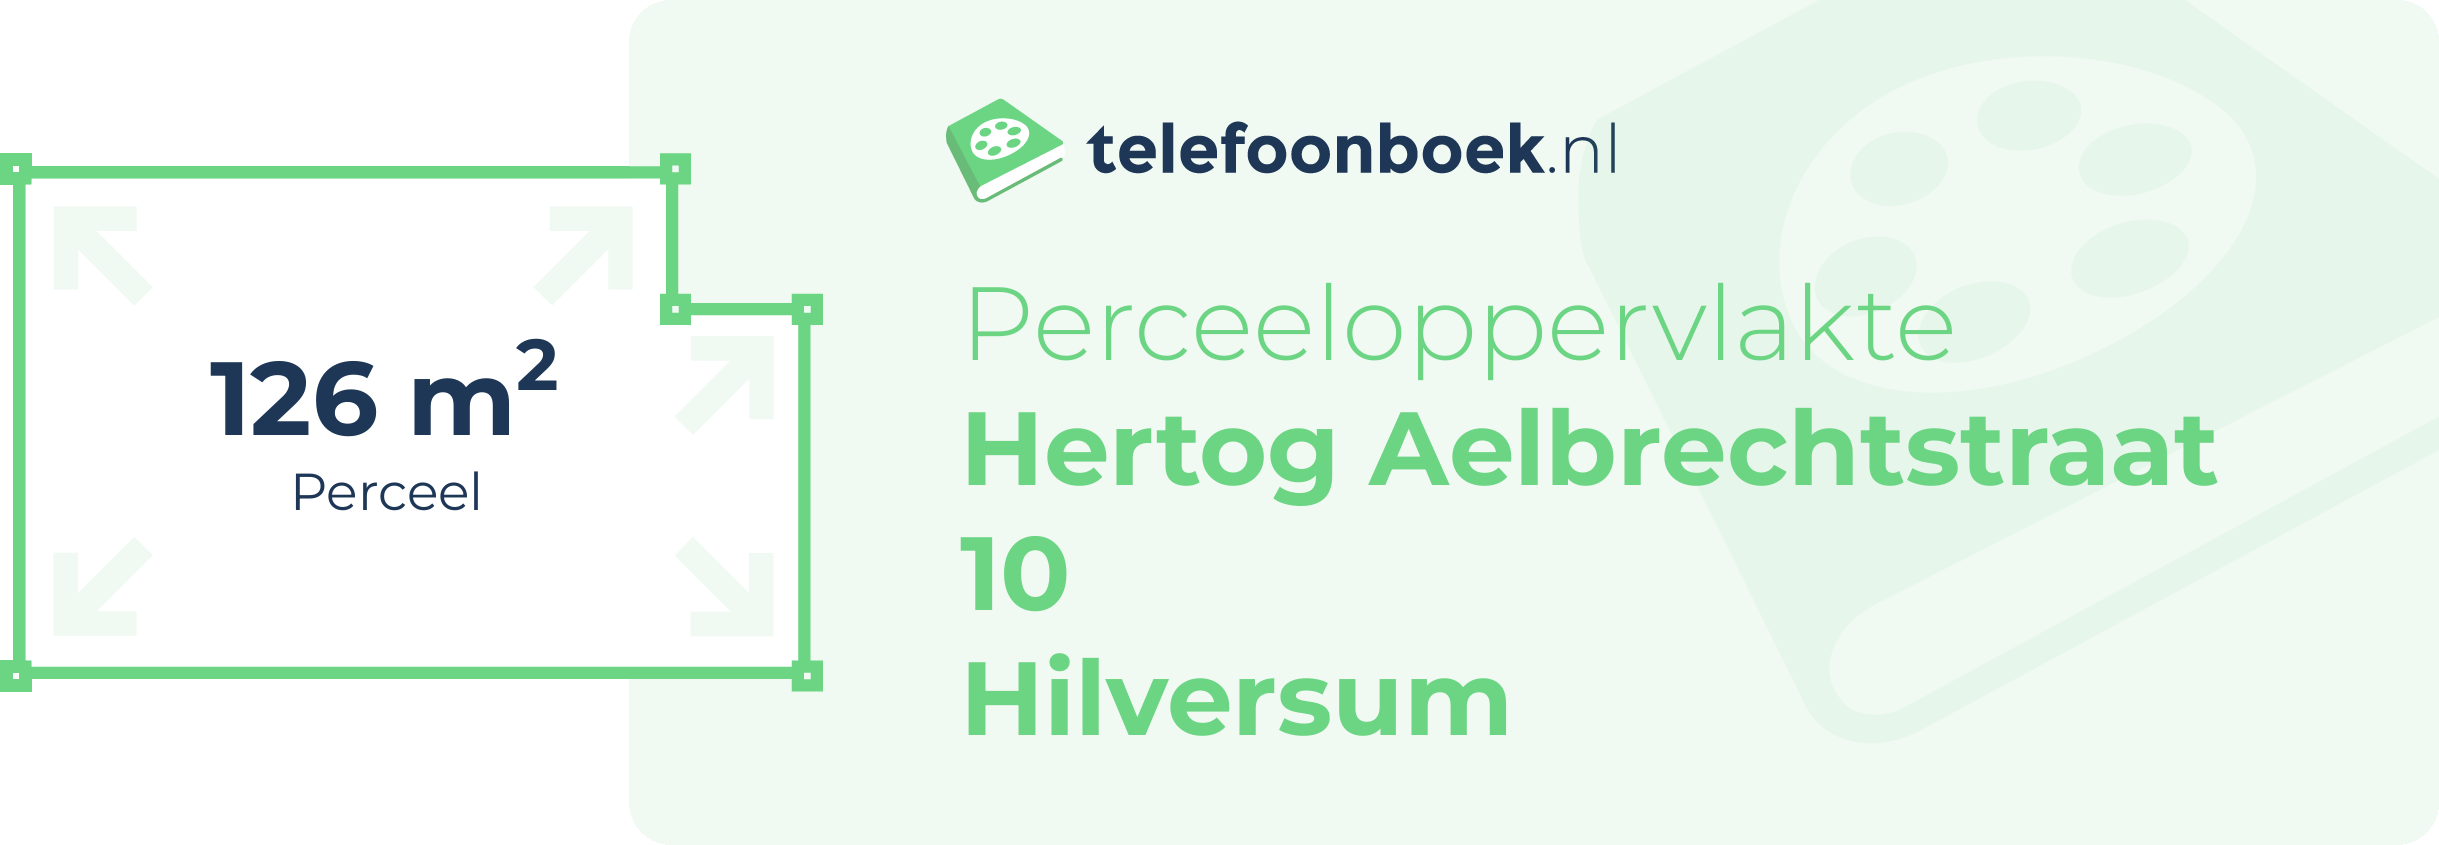 Perceeloppervlakte Hertog Aelbrechtstraat 10 Hilversum